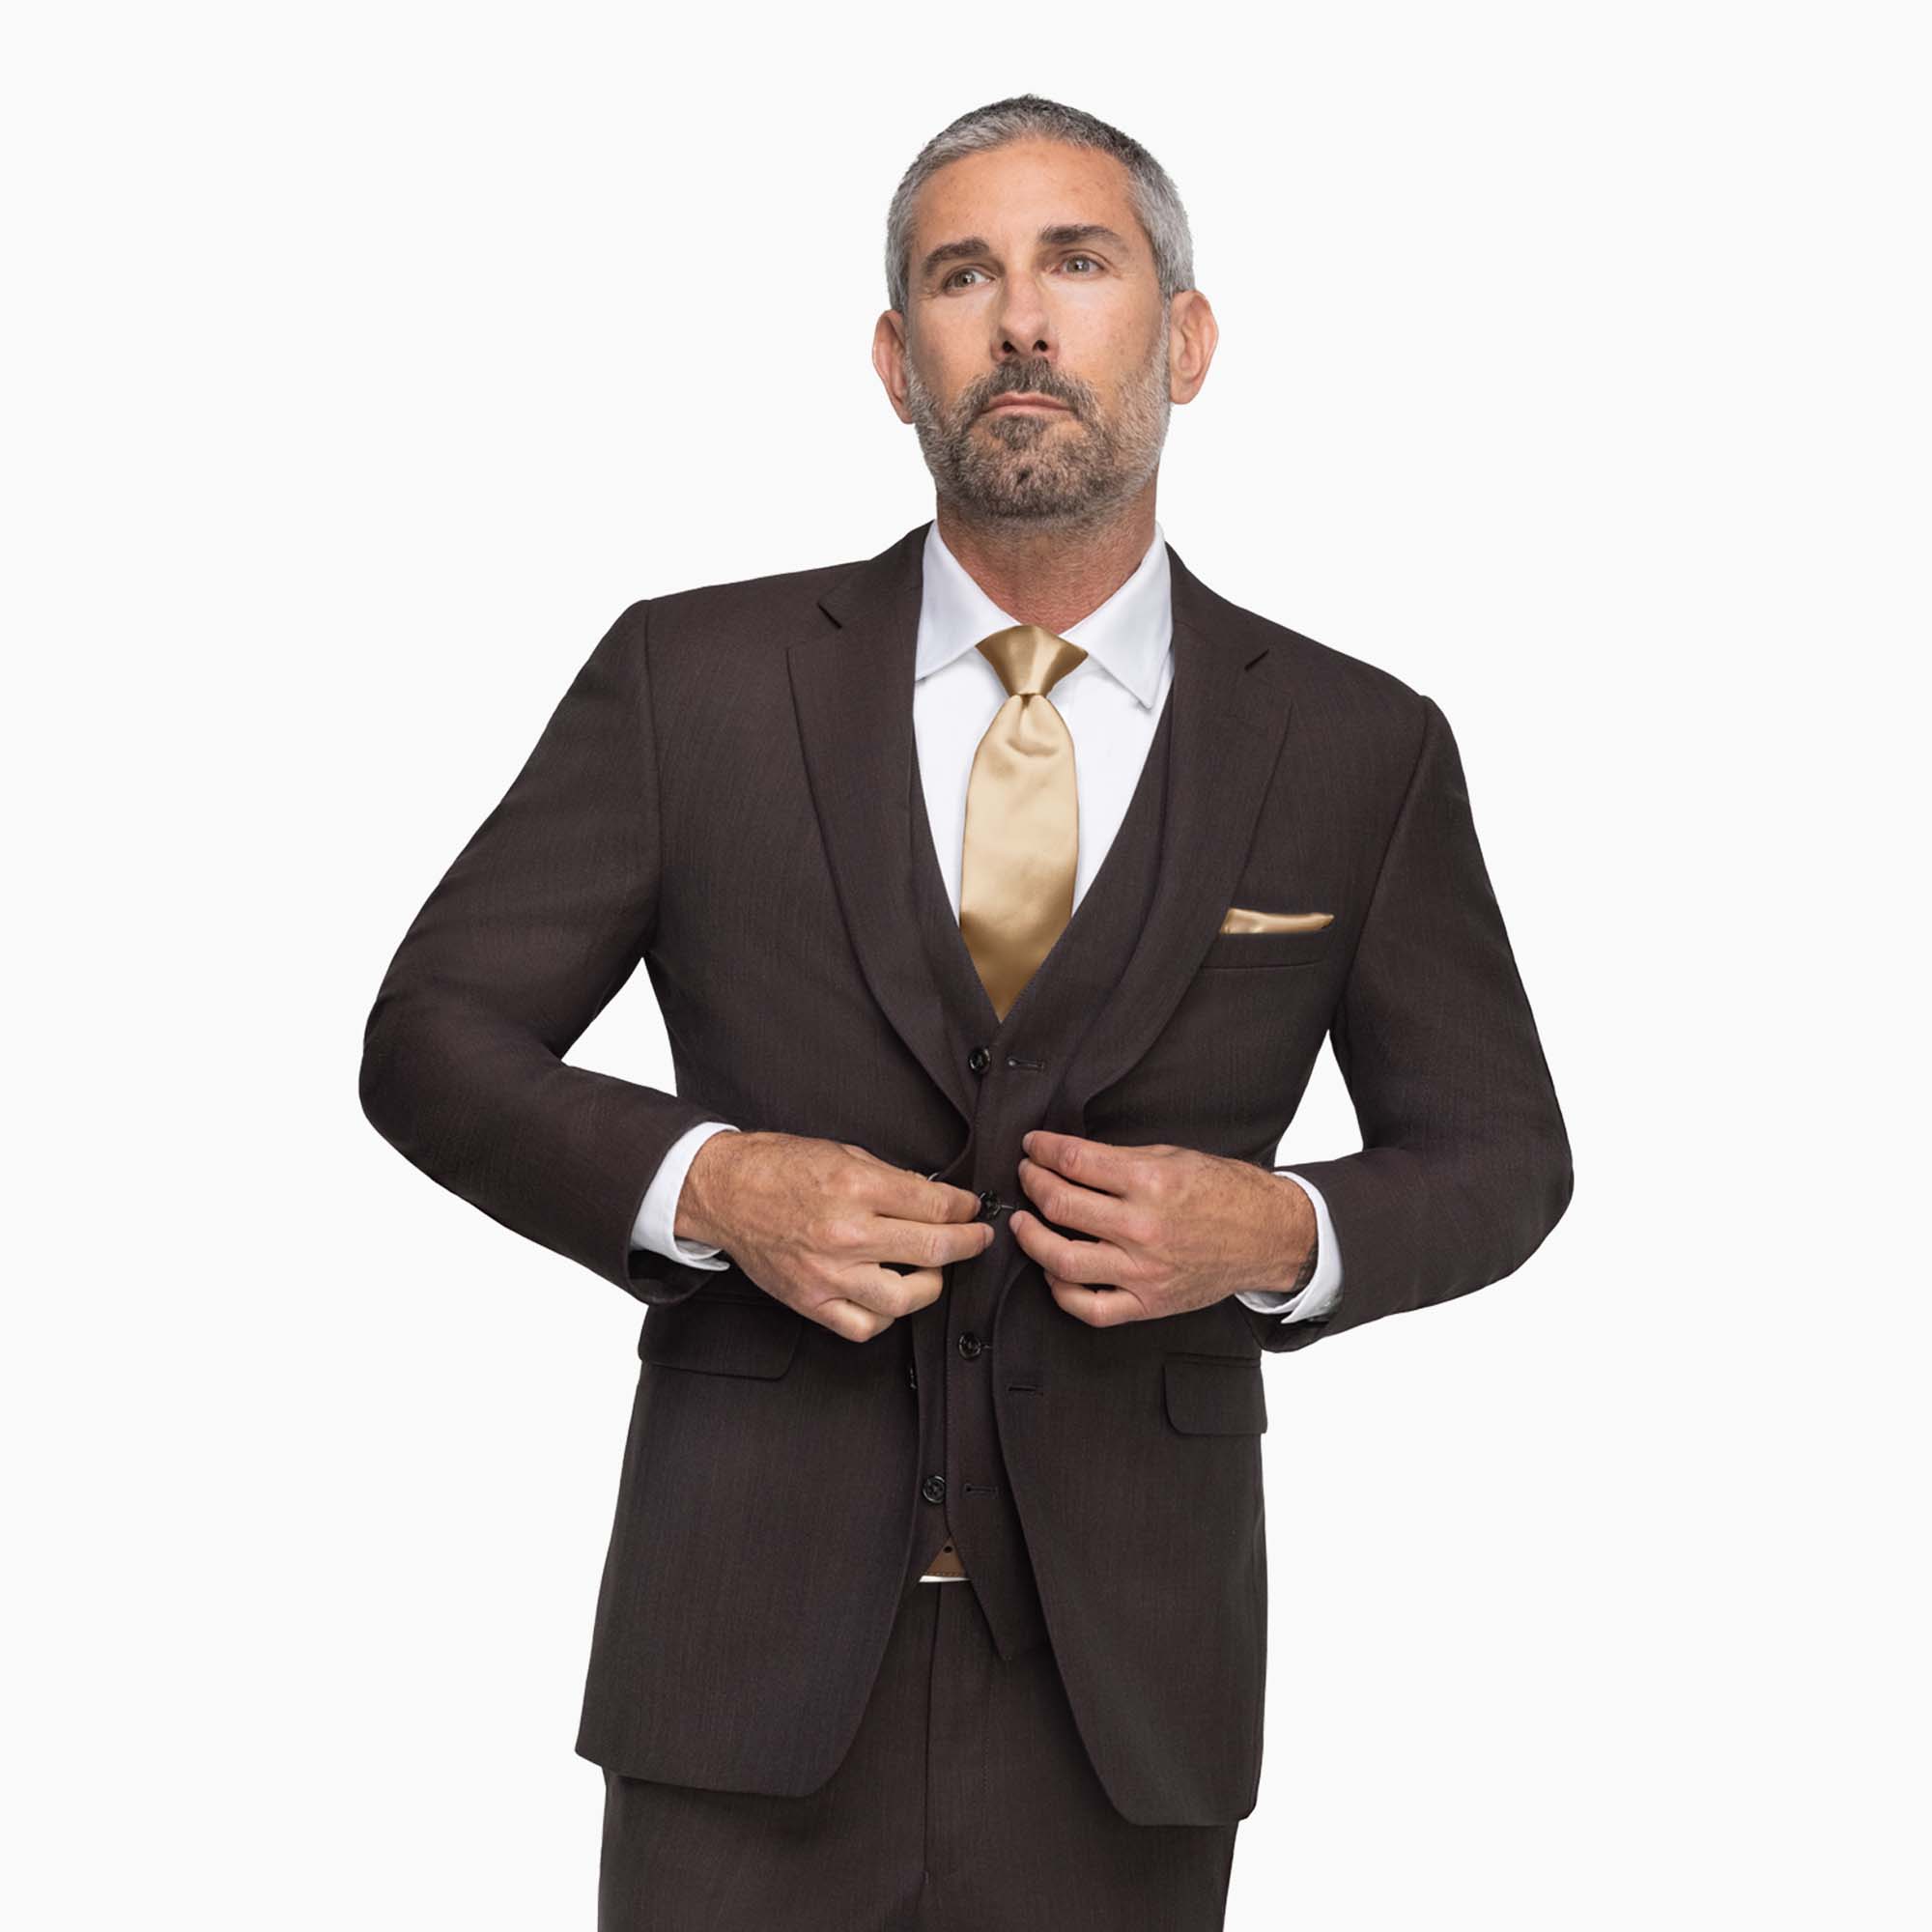 Allure Dark Brown notch lapel Suit on a male model